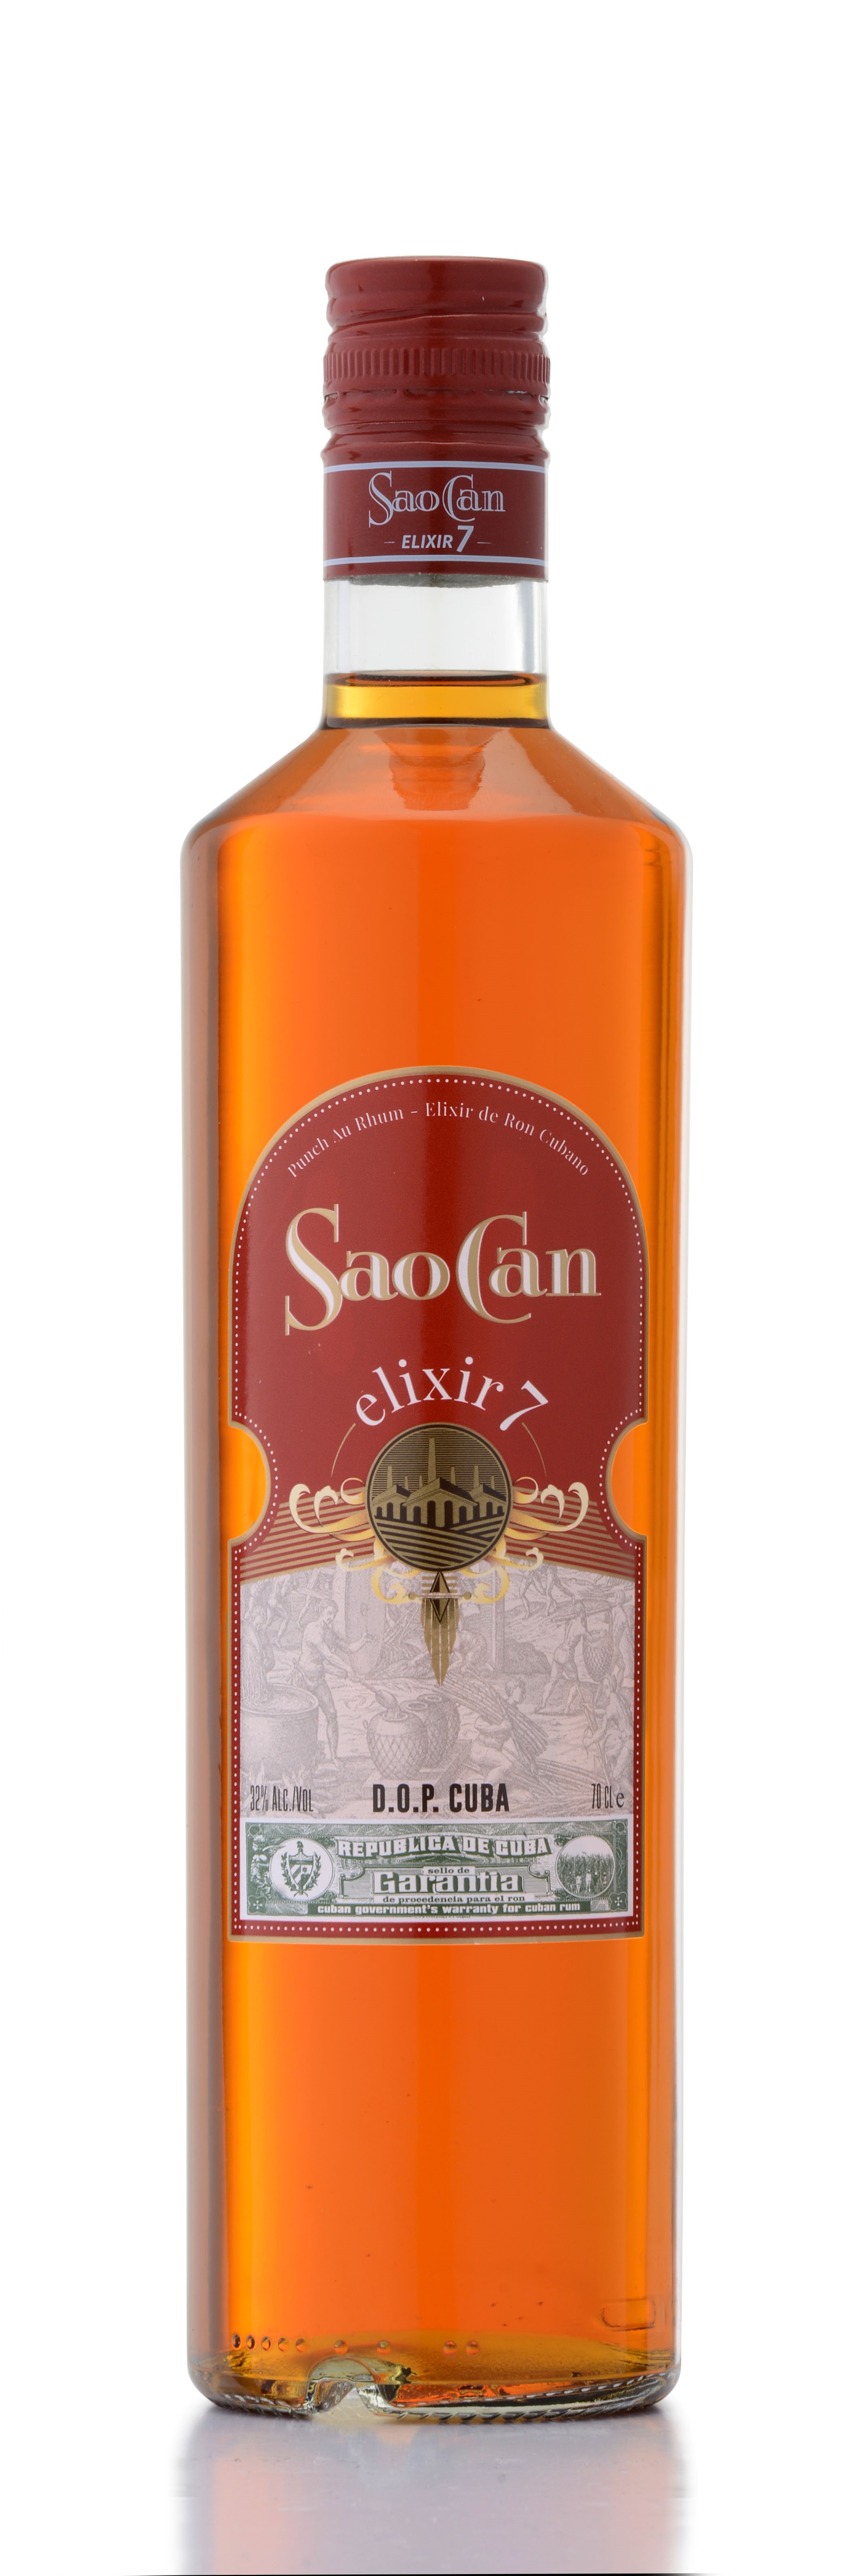 Sao Can "Punch de Rum" Elixir 7 Jahre - Kuba - 0,7l - 32% vol.